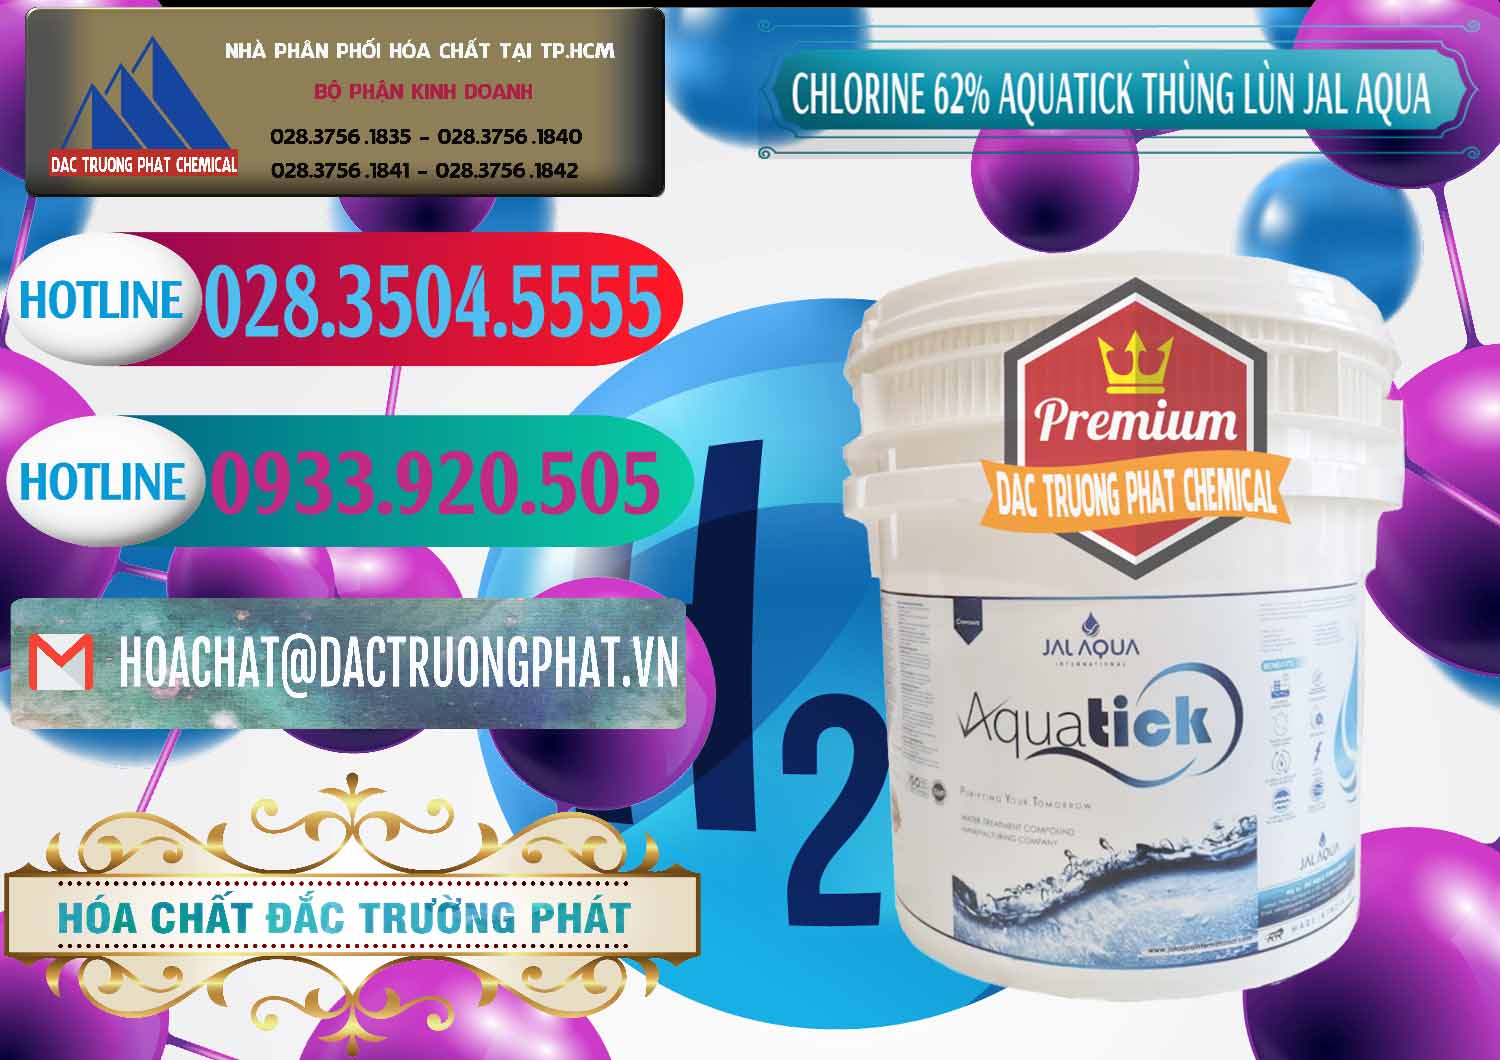 Đơn vị bán ( phân phối ) Chlorine – Clorin 62% Aquatick Thùng Lùn Jal Aqua Ấn Độ India - 0238 - Cty chuyên kinh doanh - phân phối hóa chất tại TP.HCM - truongphat.vn